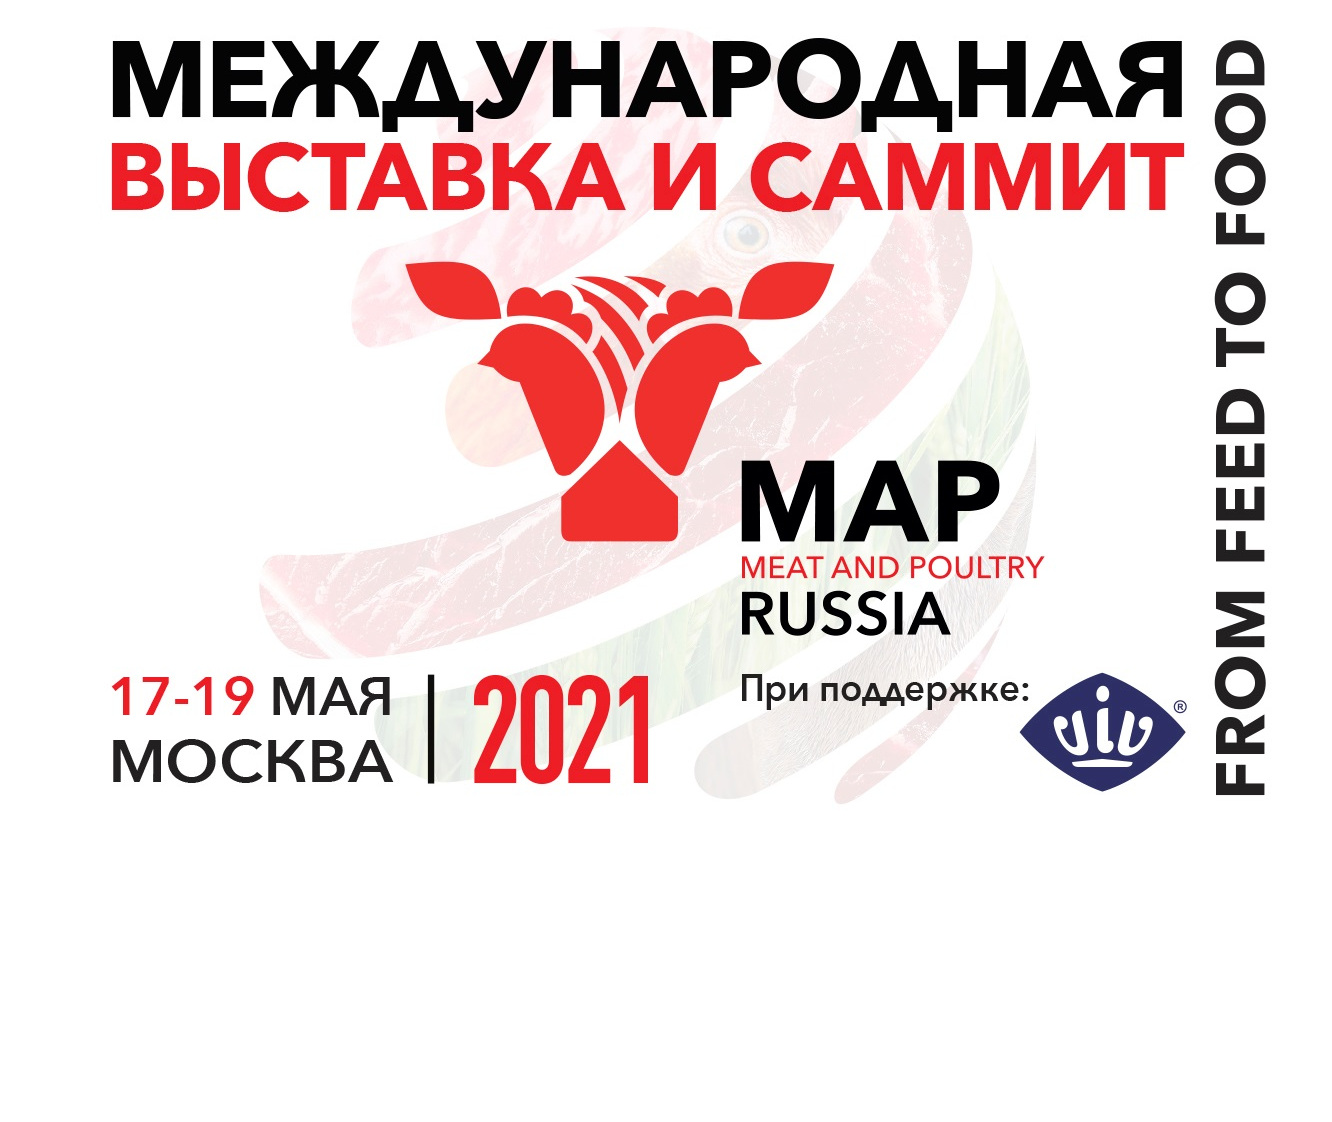 Международная специализированная выставка «Мясная промышленность. Куриный Король, Индустрия Холода для АПК / Meat and Poultry Industry Russia & VIV 2021» пройдет в Москве 17-19 мая 2021 года